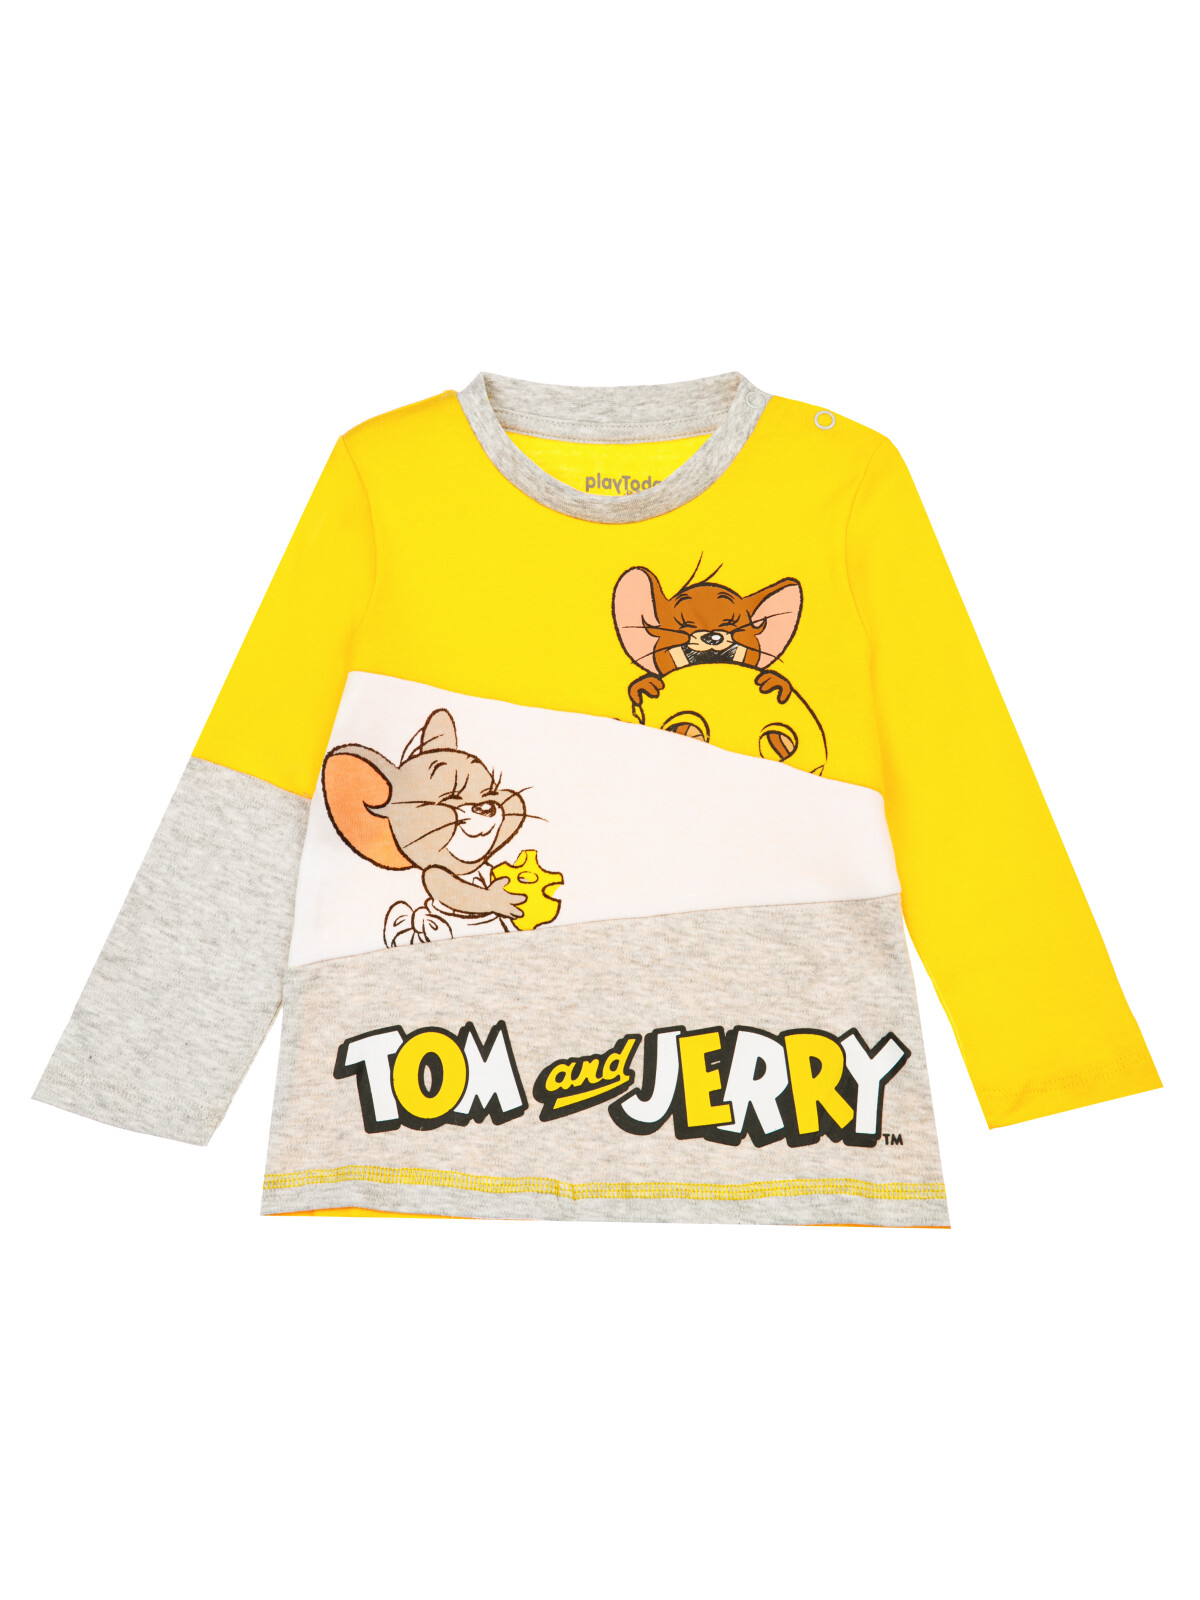 детская для мальчиков PlayToday (футболка), серый меланж,жёлтый,белый, 92